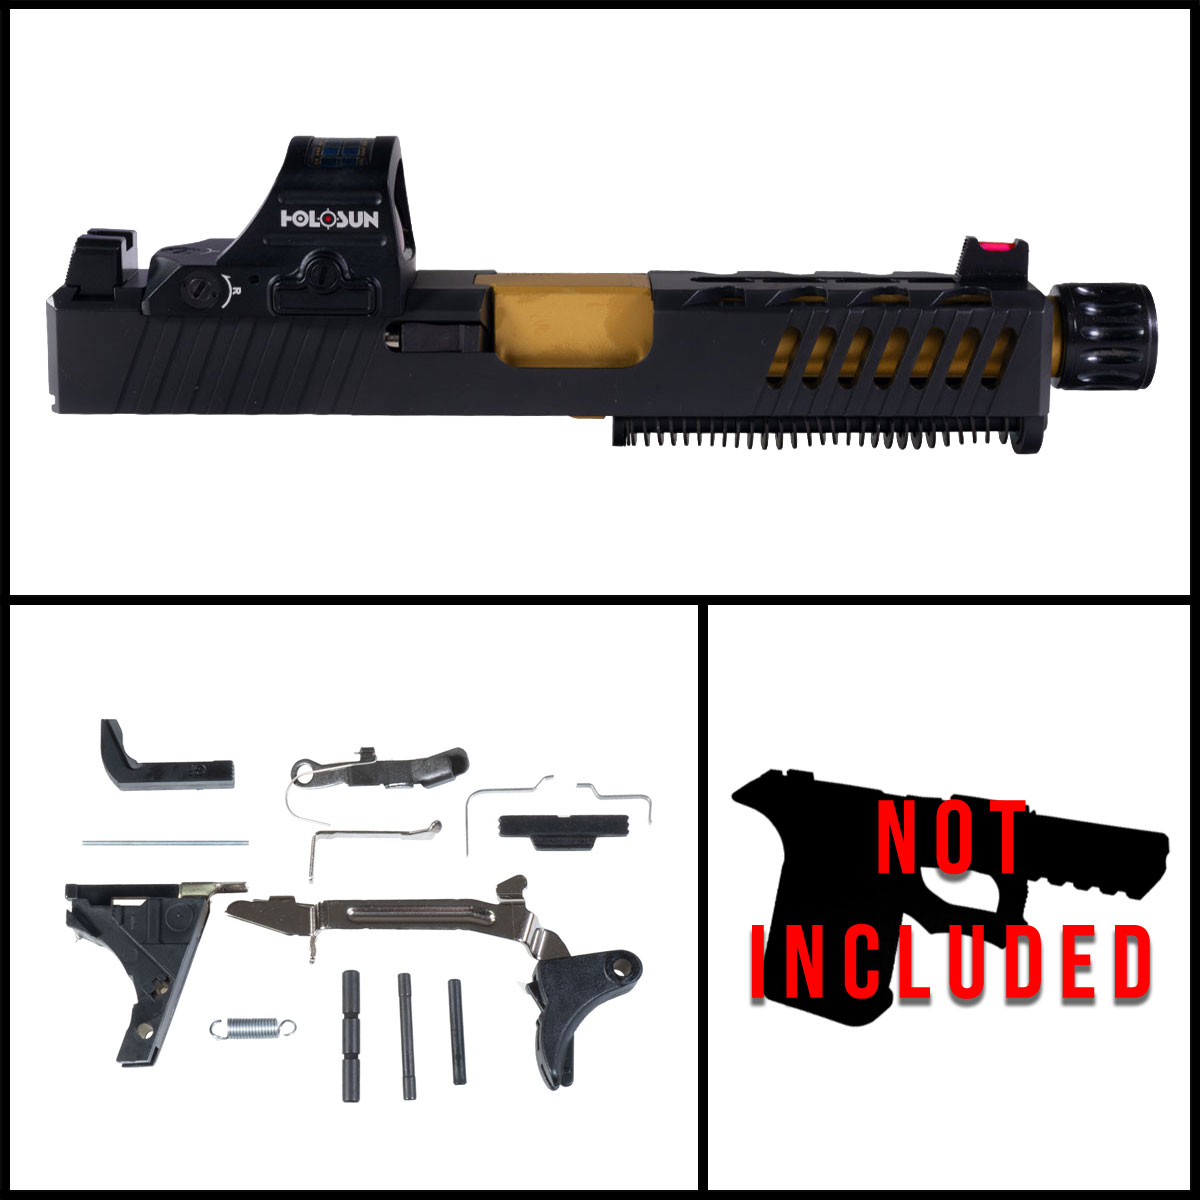 OTD 'Festina Lente w/ HS507C-X2 Red Dot' 9mm Full Pistol Build Kit (Everything Minus Frame) - Glock 19 Gen 1-3 Compatible